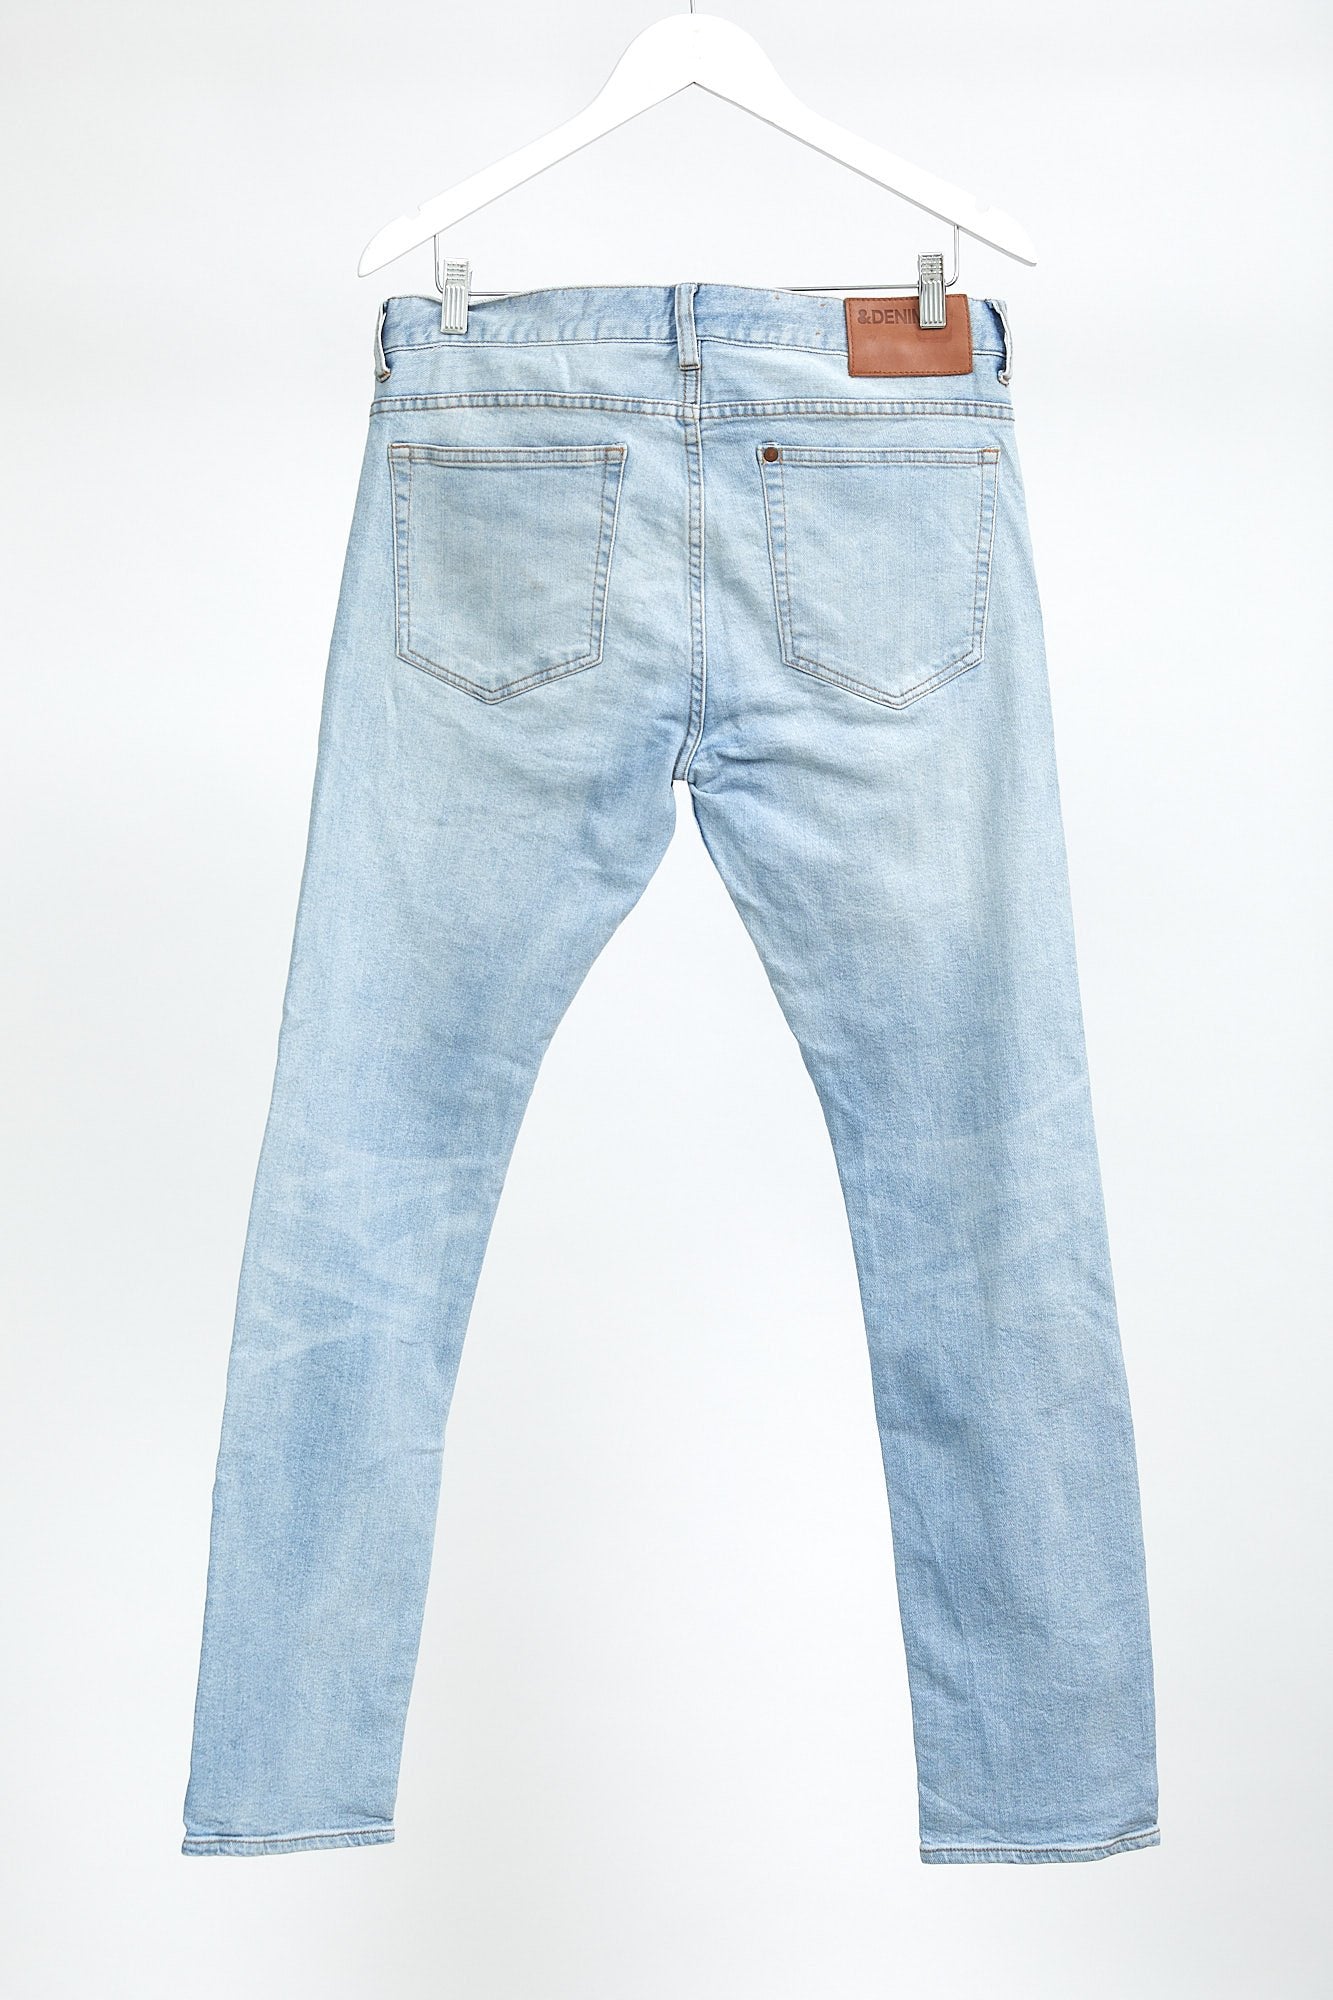 H&M Light Blue Straight Slim Fit Jean: W32 L32